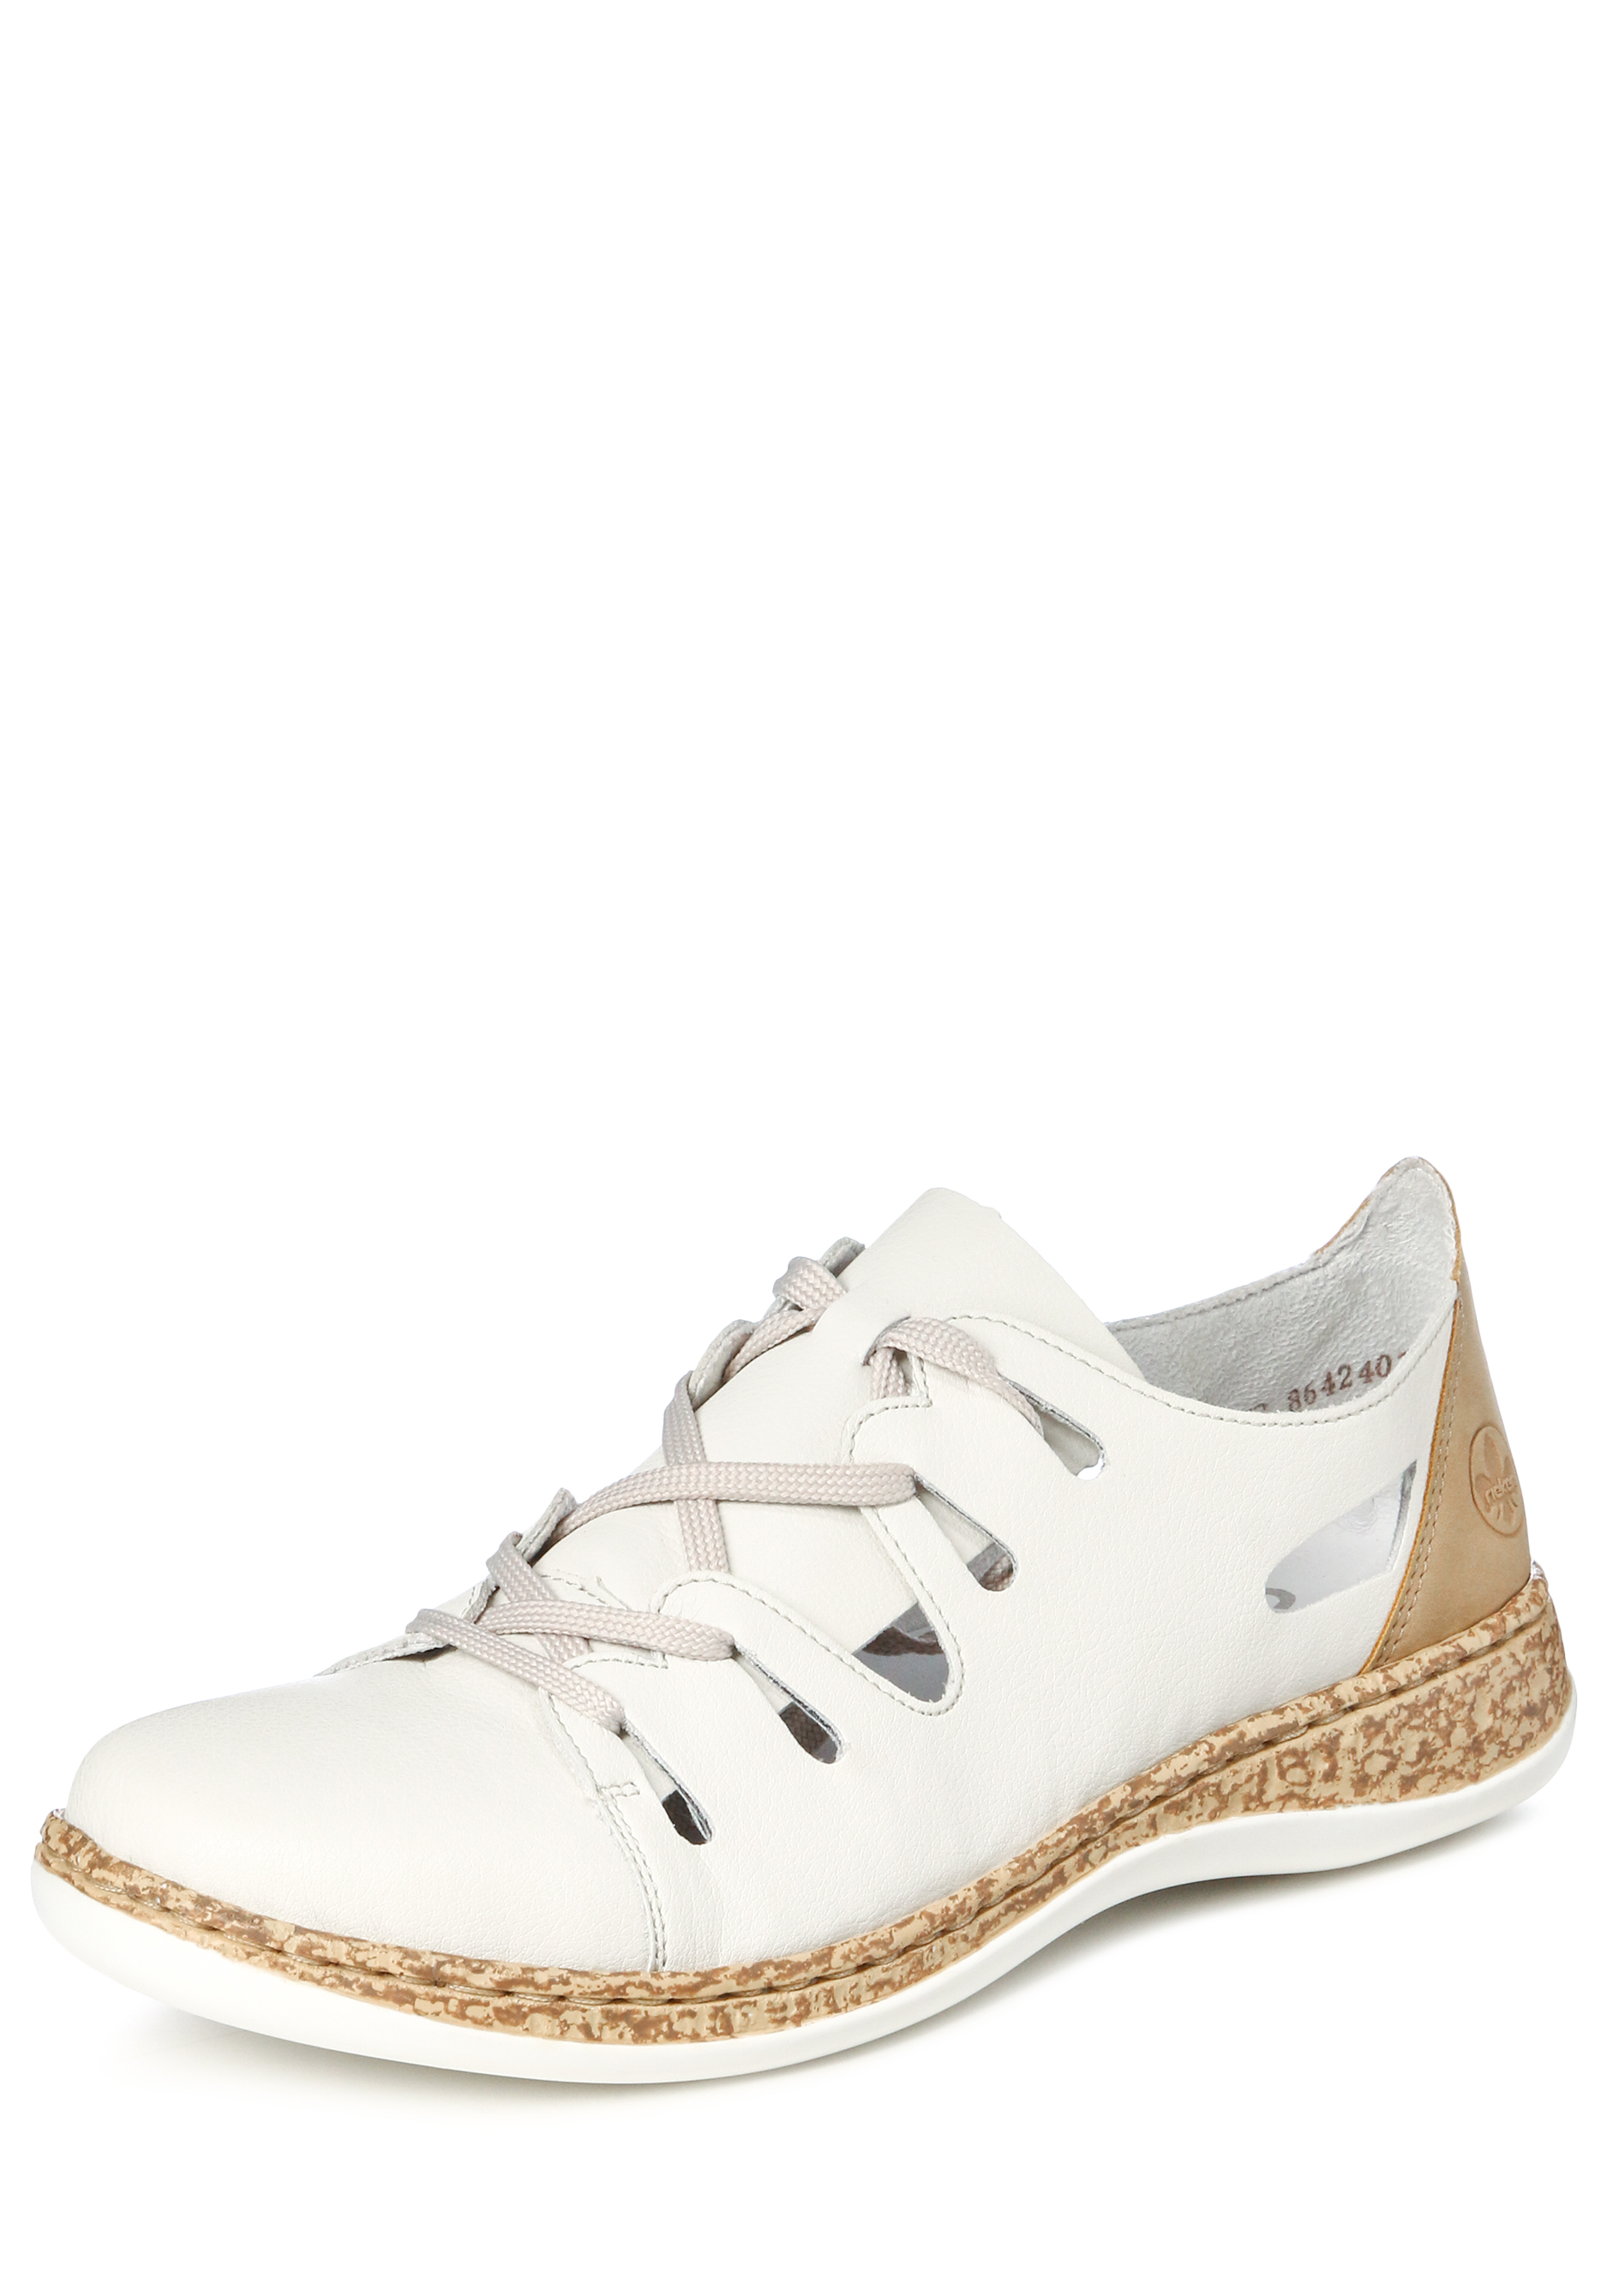 Туфли летние женские "Зои" Remonte, цвет белый, размер 37 - фото 1